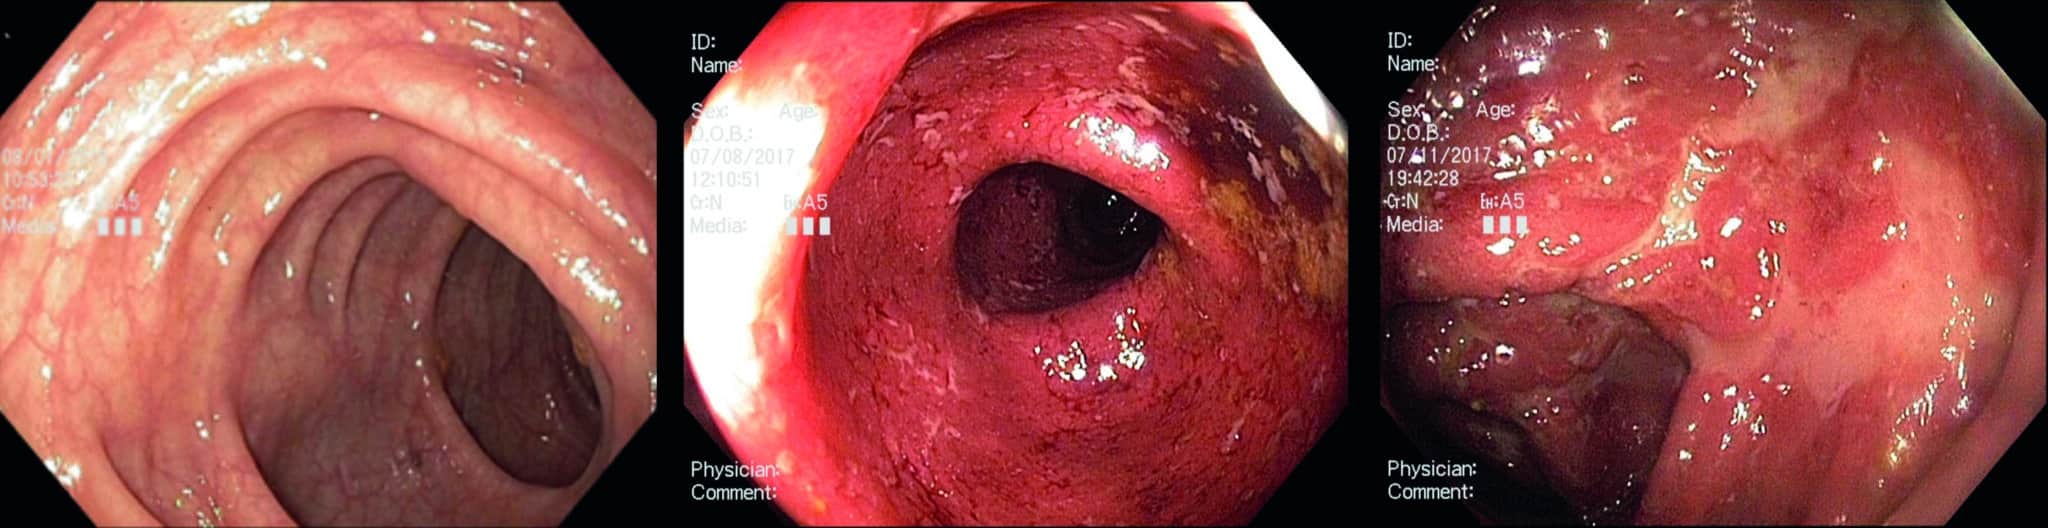 Endoscopische afbeeldingen: A. Normaal colon. B. Colitis ulcerosa met verdwijnen van normaal vaatpatroon, erytheem, friabiliteit en verpreide kleine ulcera. C. Ernstige colitis ulcerosa met grote confluerende ulcera in het colon.